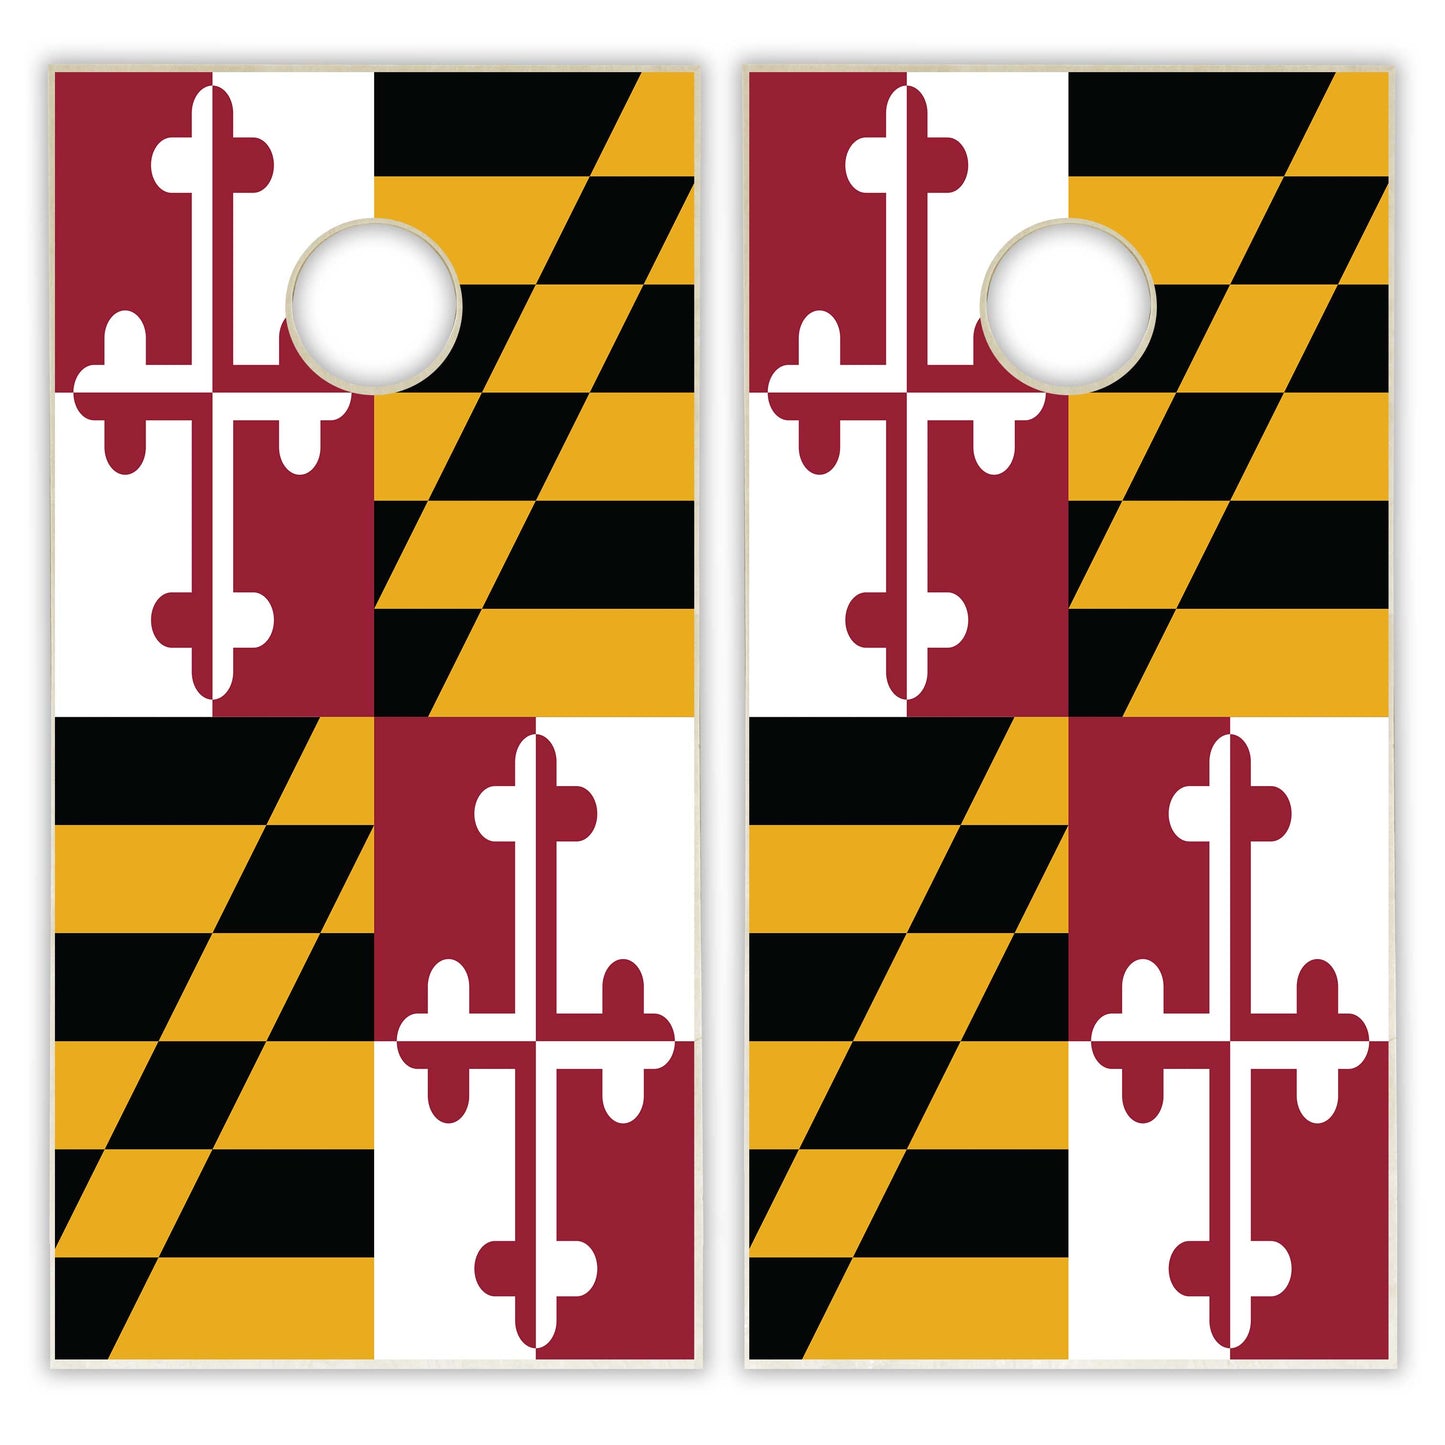 Maryland State Flag Cornhole Set